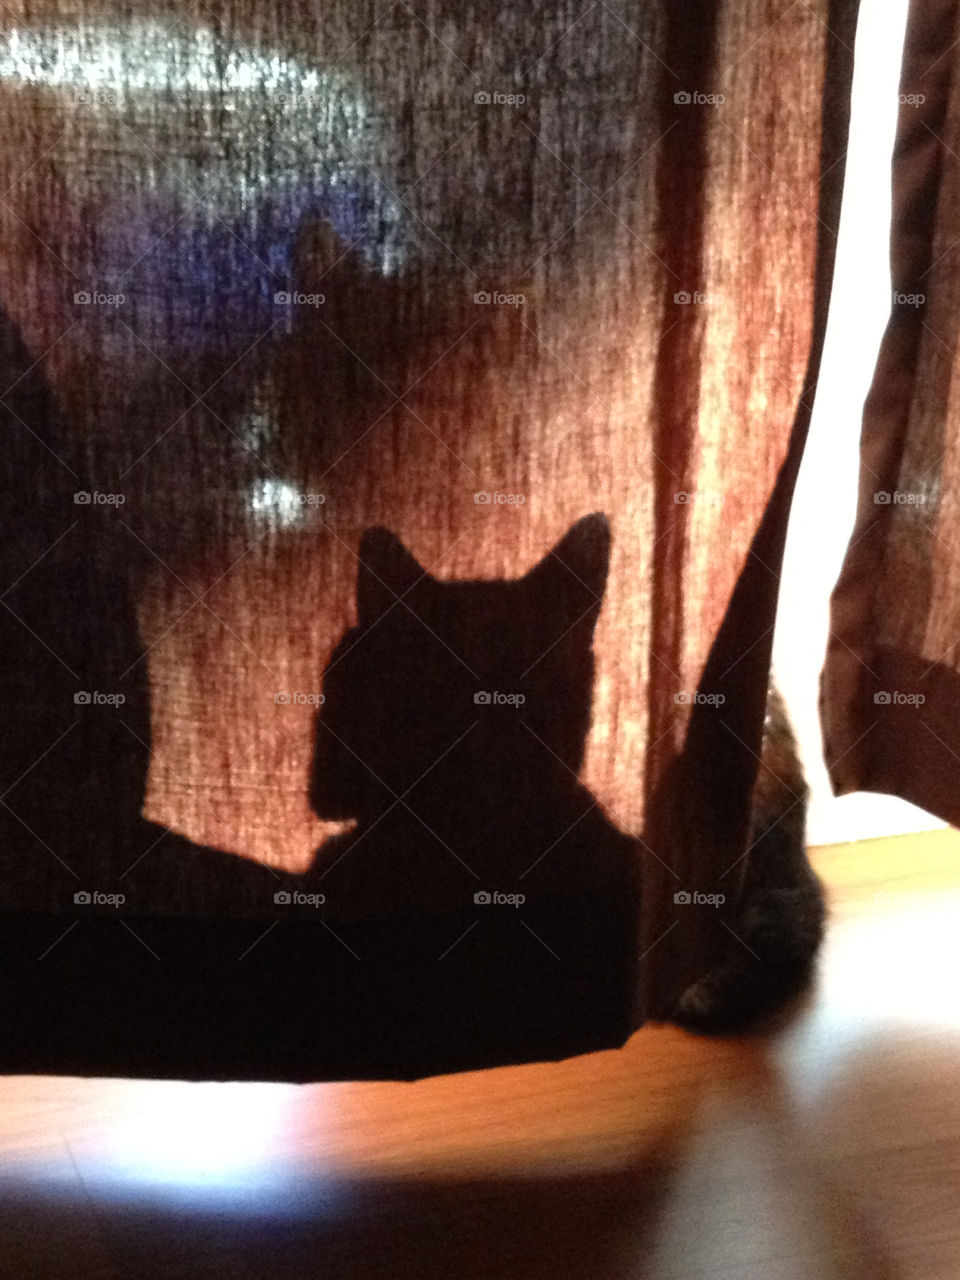 boston shadow cat window by sarali11